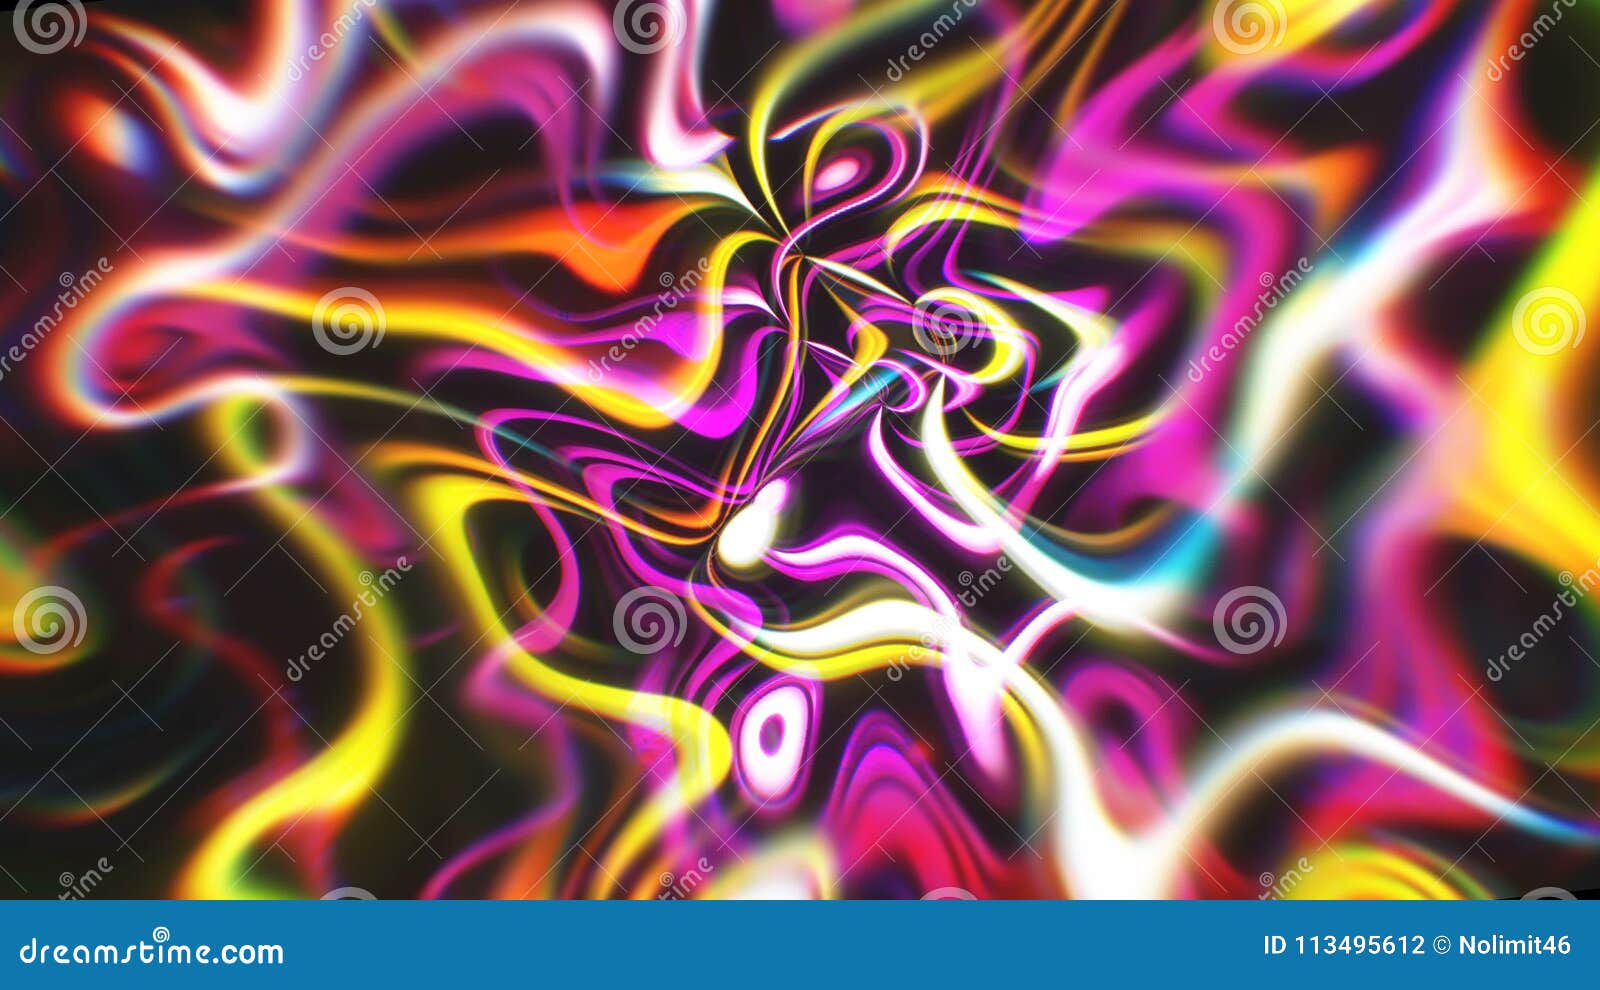 Abstract Energy Background - Hình nền năng lượng trừu tượng đầy sức mạnh và động lực sẽ khiến bạn cảm thấy đầy cảm hứng. Xem hình ảnh này để tìm hiểu cách nó có thể cải thiện sự tập trung và tính sáng tạo của bạn.